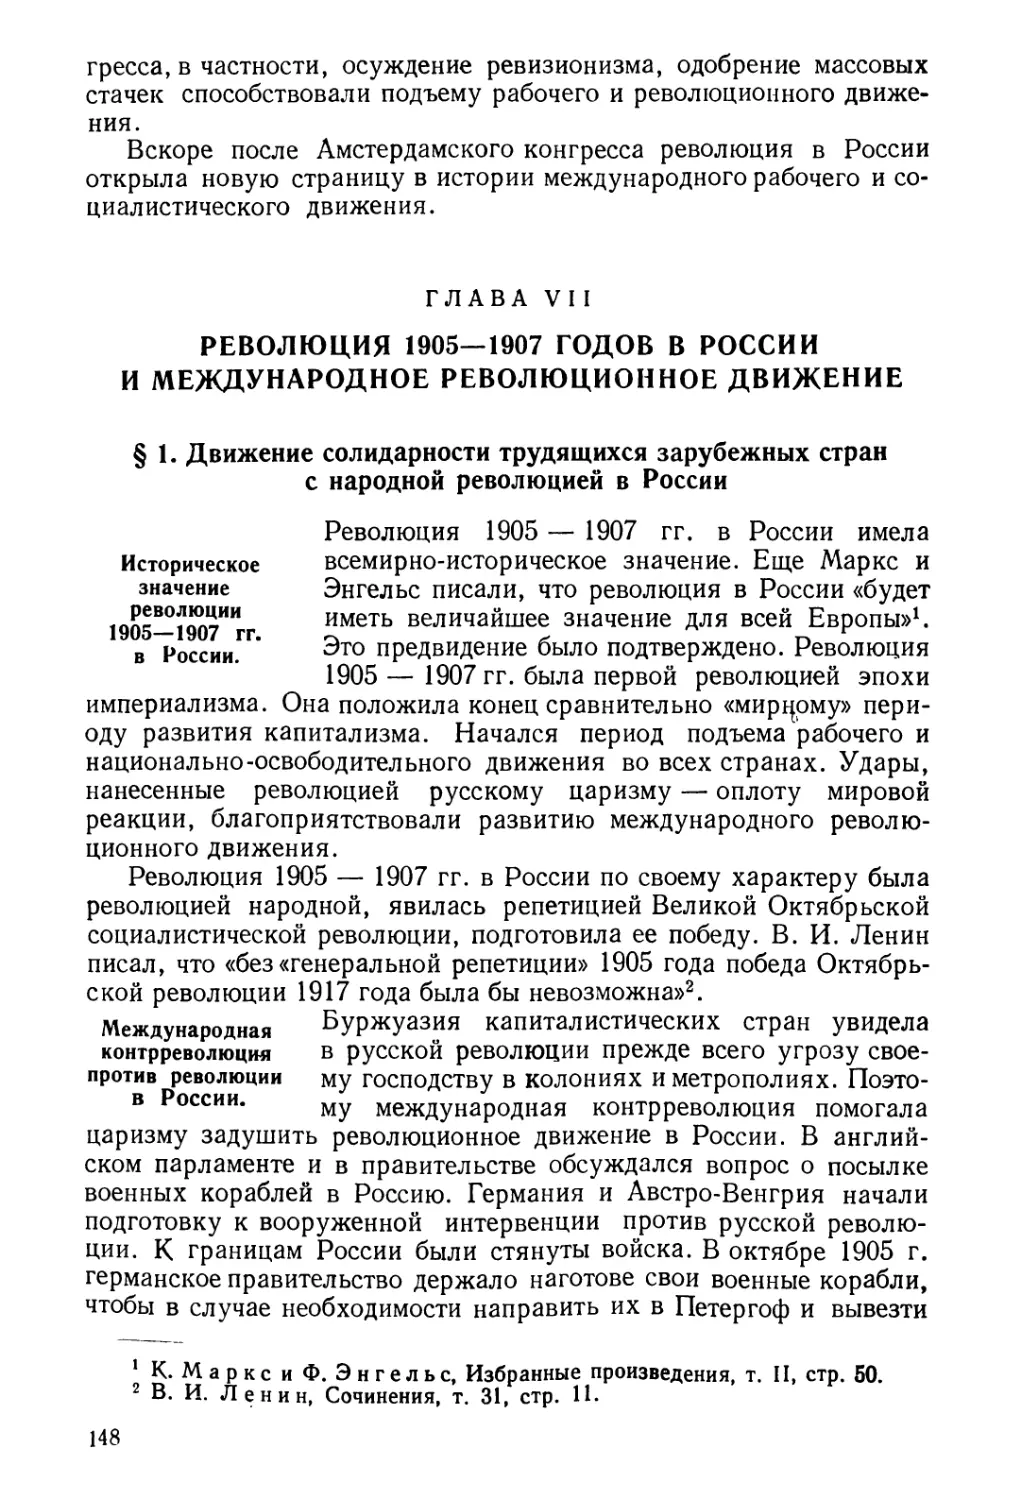 Глава VII. Революция 1905—1907 годов в России и международное революционное движение